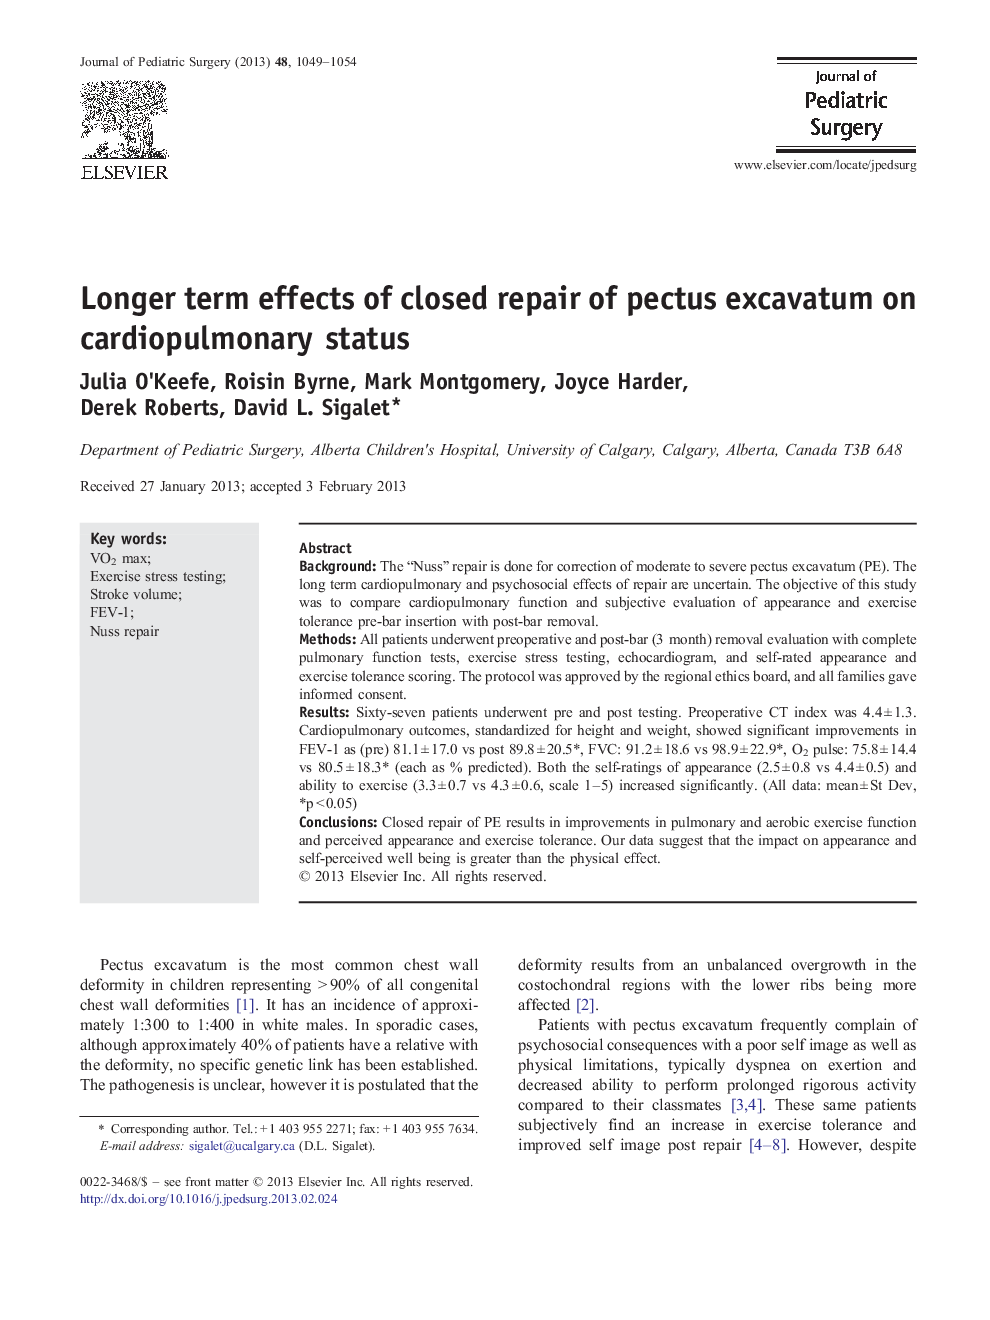 Longer term effects of closed repair of pectus excavatum on cardiopulmonary status